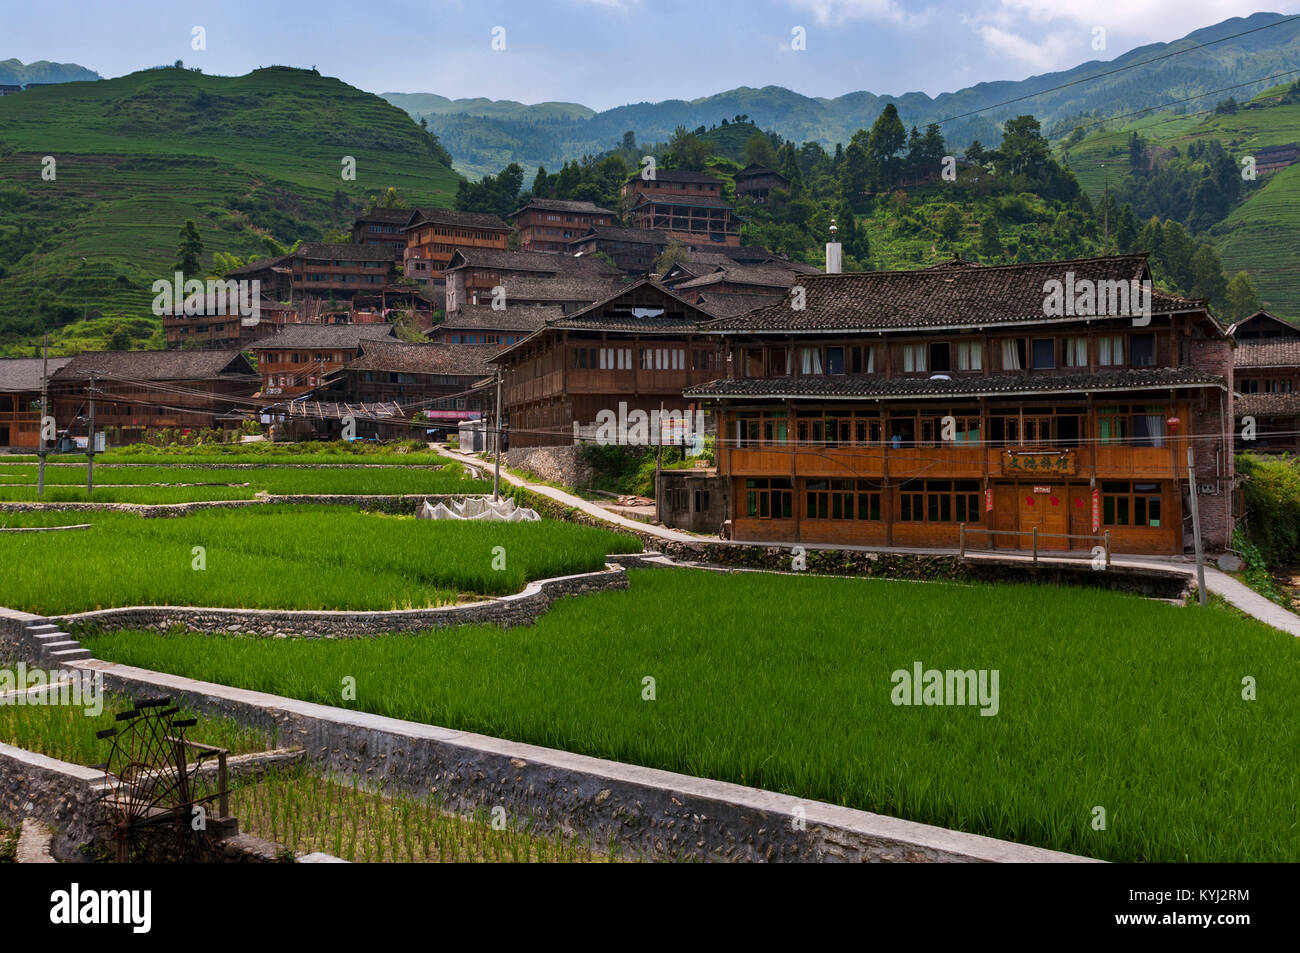 Dazhai, China - August 3, 2012: Blick auf das Dorf Dazhai, mit Holz Häuser und Reisfelder entlang den Hängen der umliegenden Berge in China. Stockfoto